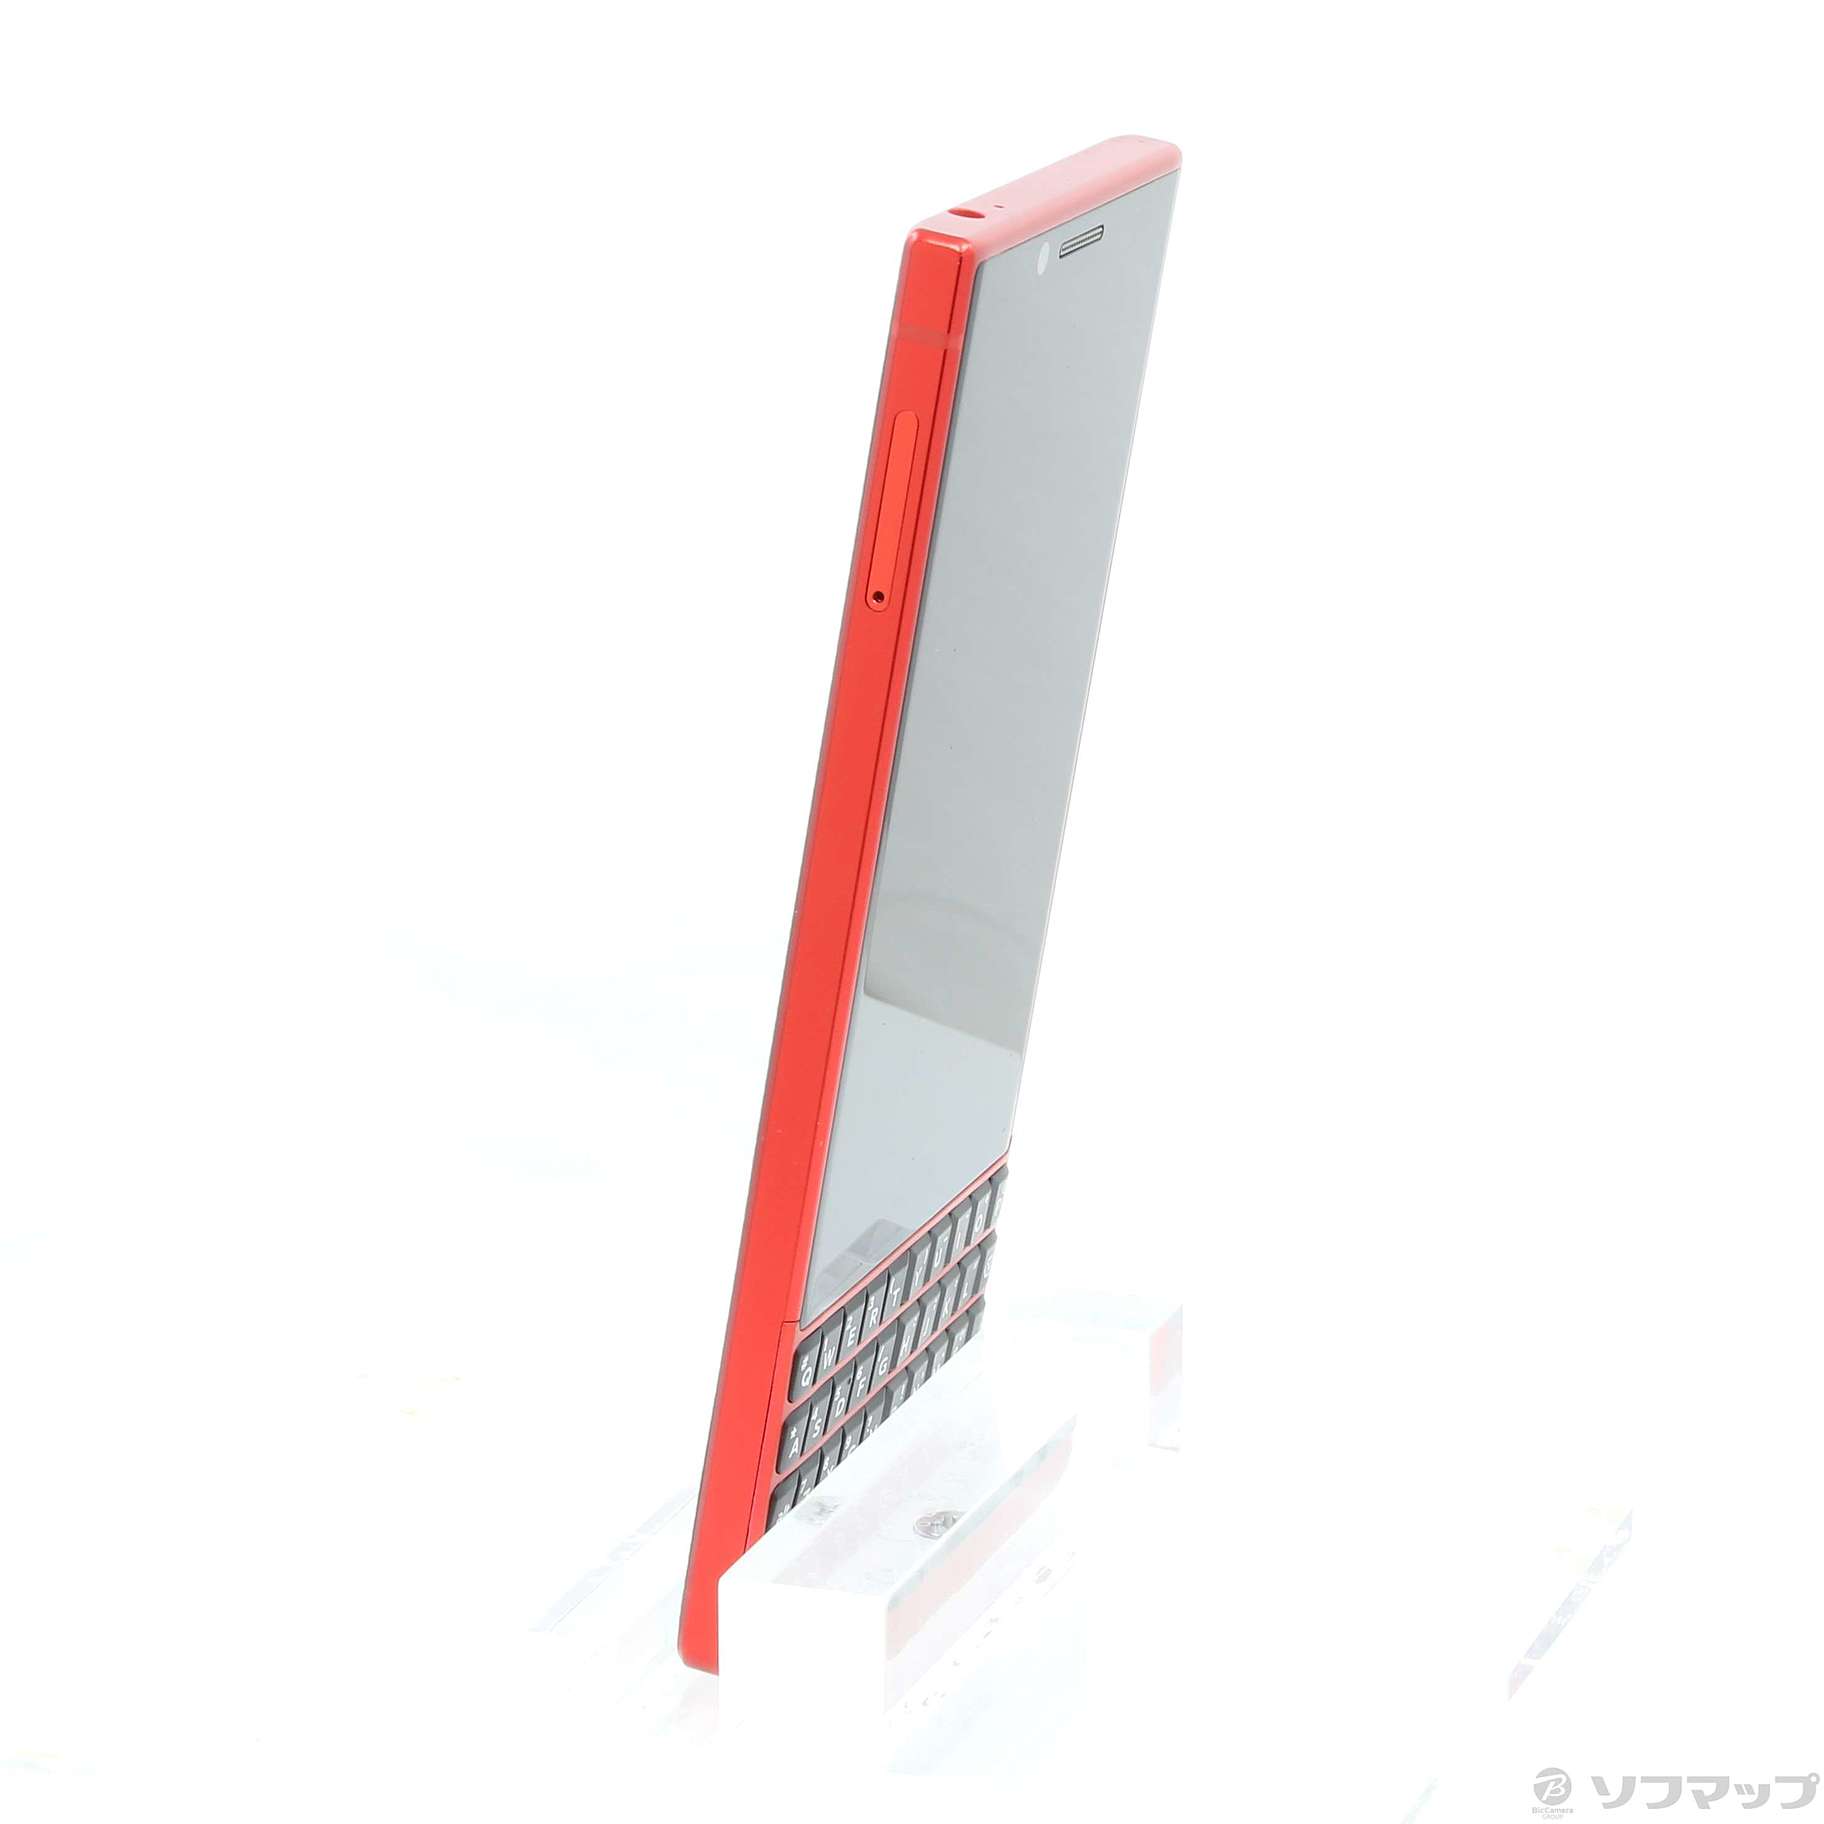 中古】BlackBerry KEY2 RED EDITION 128GB レッド BBF1009 SIMフリー ...